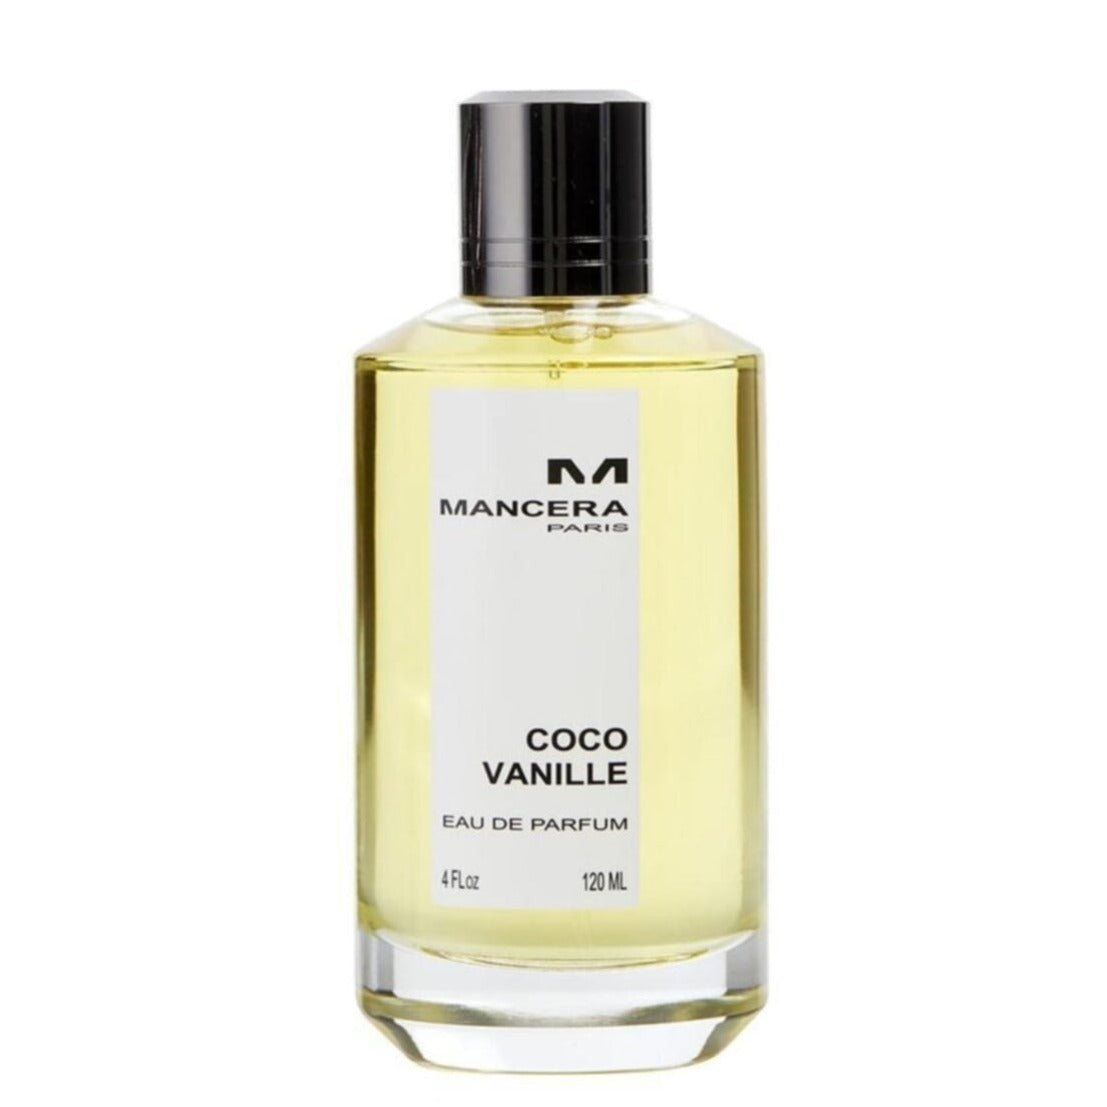 MANCERA COCO VANILLE eau de parfum 120ml